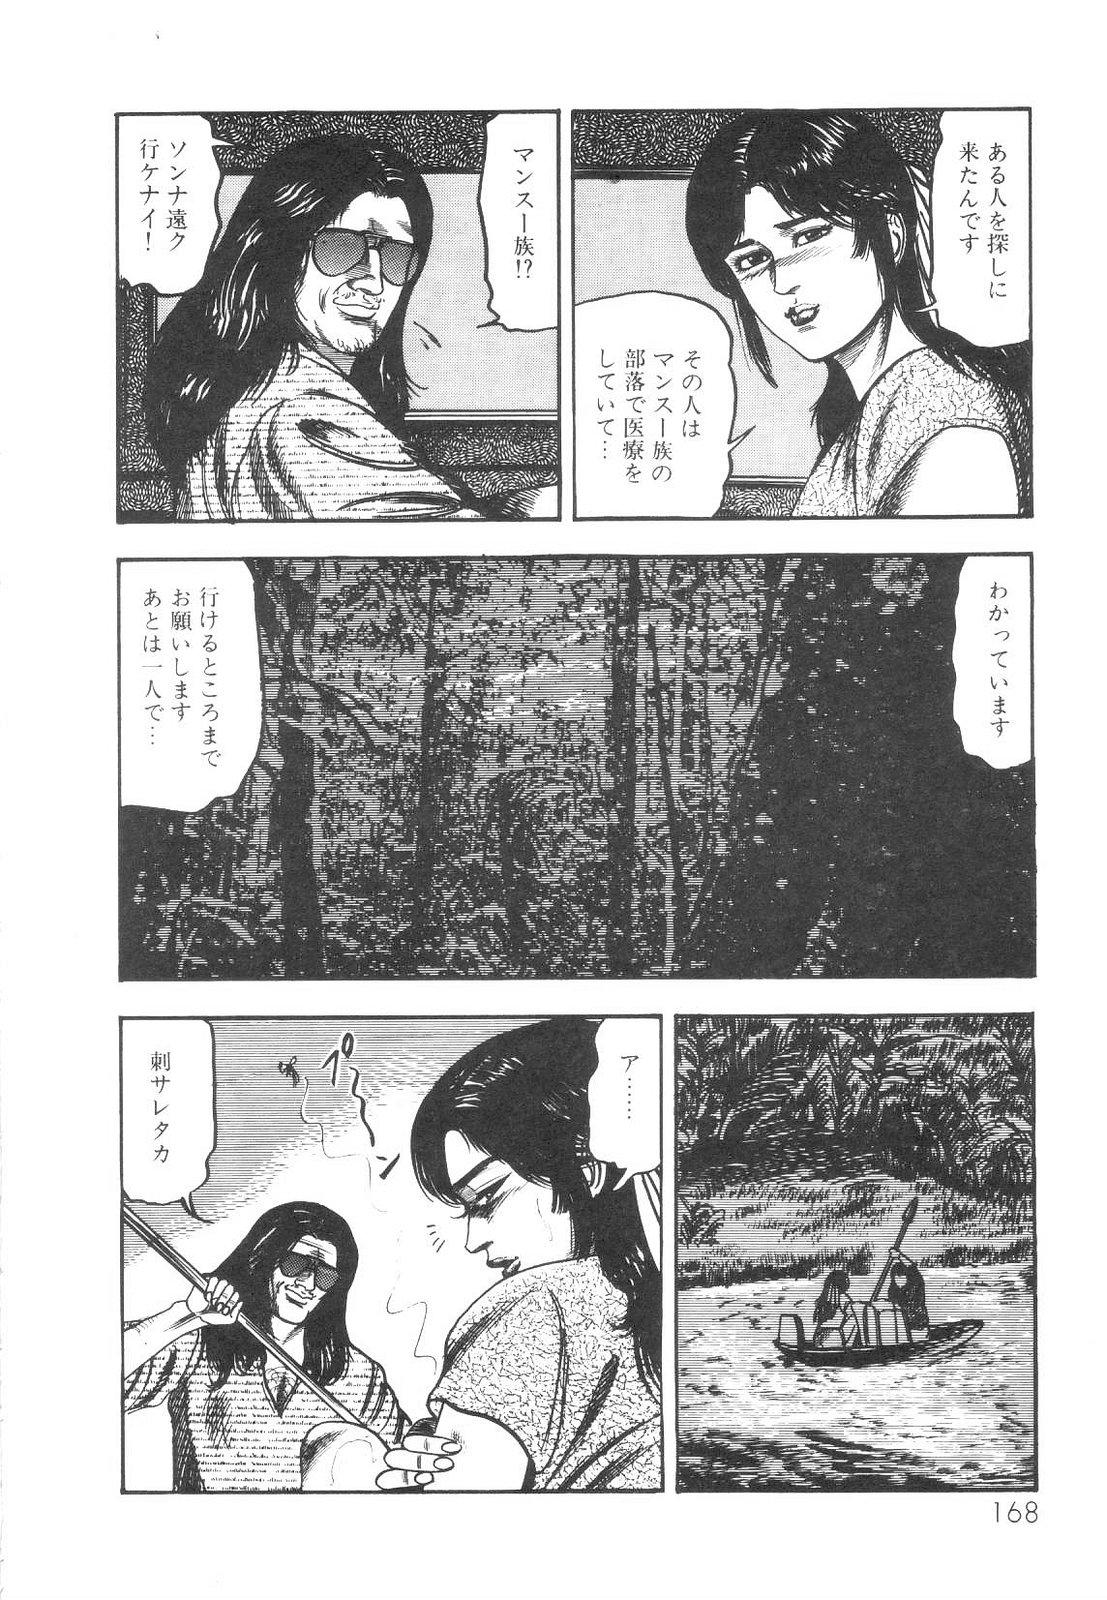 Shiro no Mokushiroku Vol. 1 - Sei Shojo Shion no Shou 168